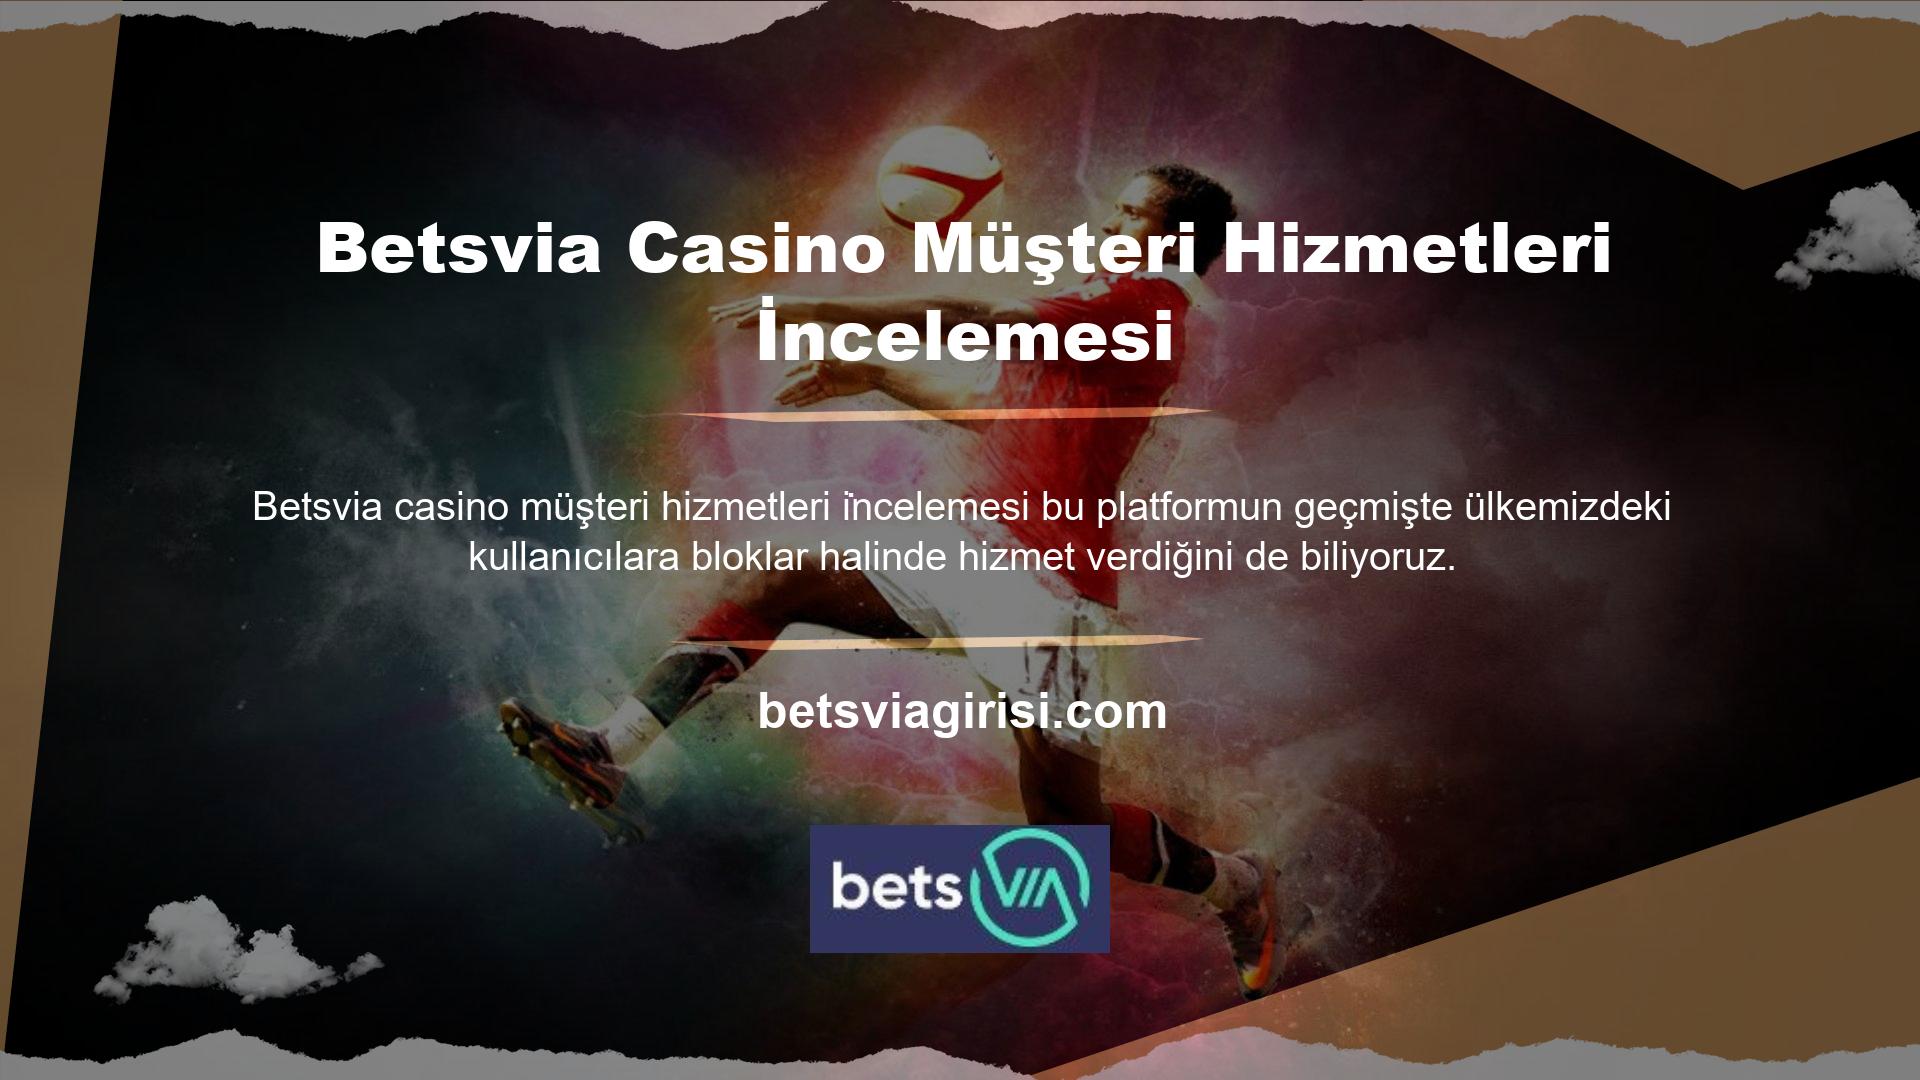 Müşterileriniz için yeni bir Betsvia Casino müşteri hizmetleri inceleme adresi oluşturun ve engelleri aşın